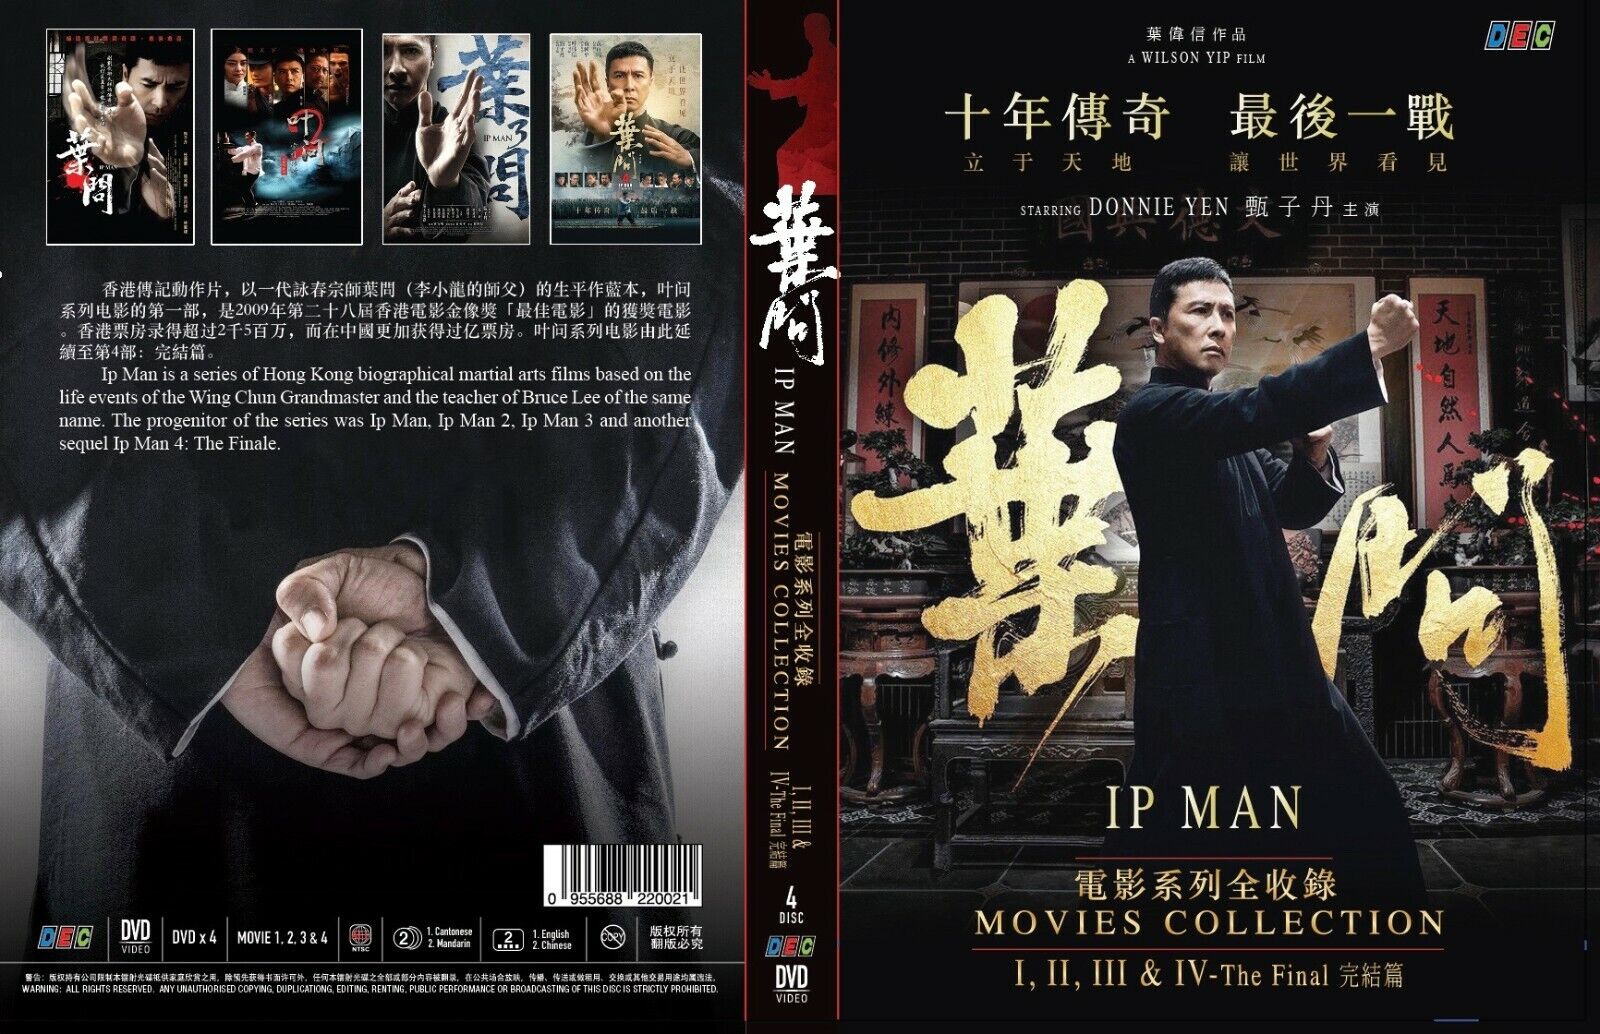 Ip Man (Serie de películas: 1 2 3 4: Finale) ~ Todas las regiones Película de Donnie Yen ~ 955688220021 | eBay